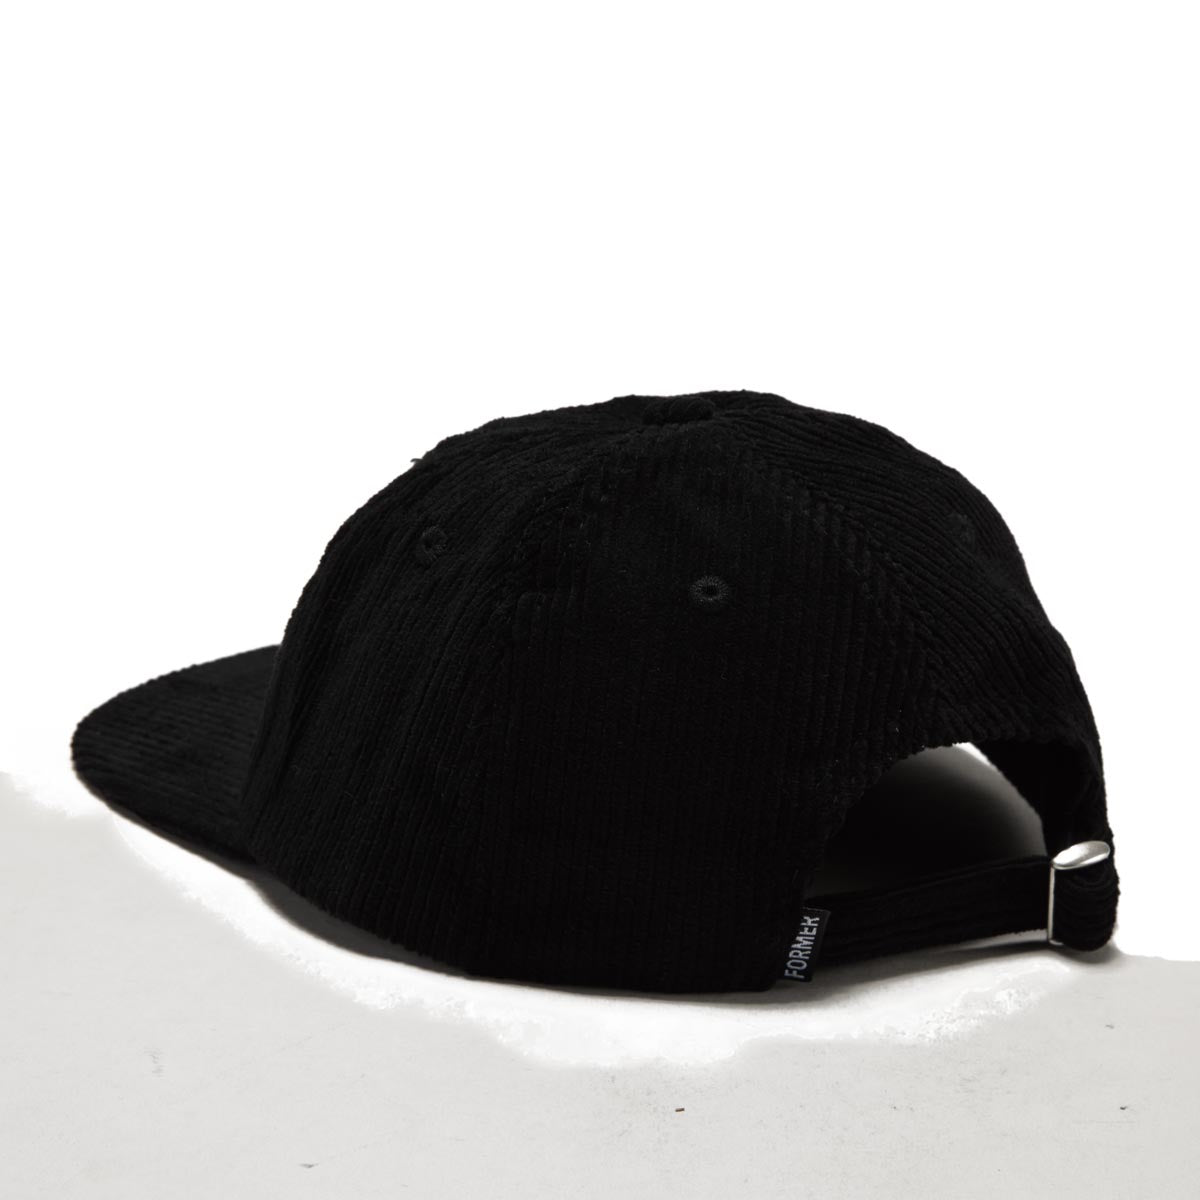 Former Still Life Hat - Black image 2